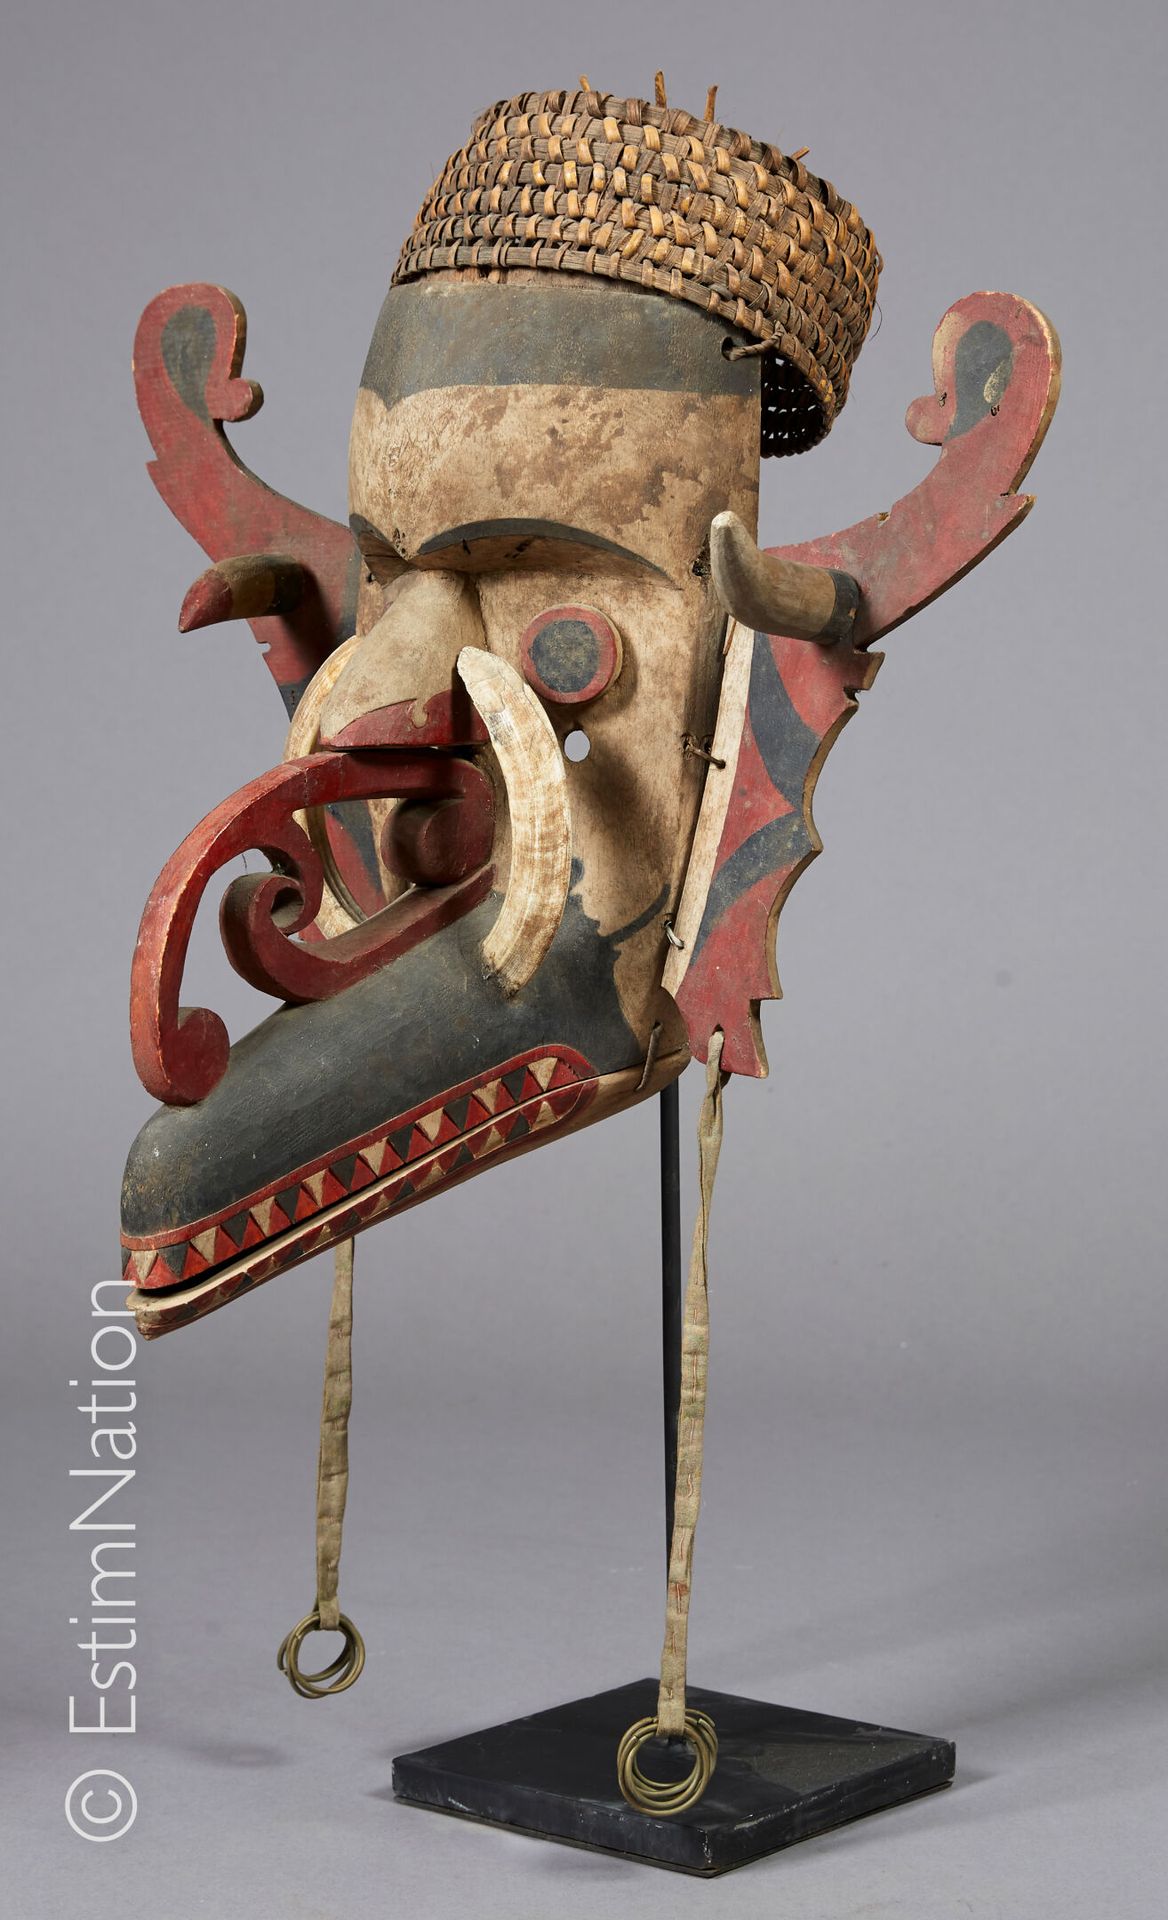 DAYAK - BORNEO 
达亚克-伯尔尼奥









木雕和天然颜料的面具，两只耳朵上装饰有两个吊坠和金属环。喙上有卷轴和野猪牙的装饰。藤制头饰。&hellip;